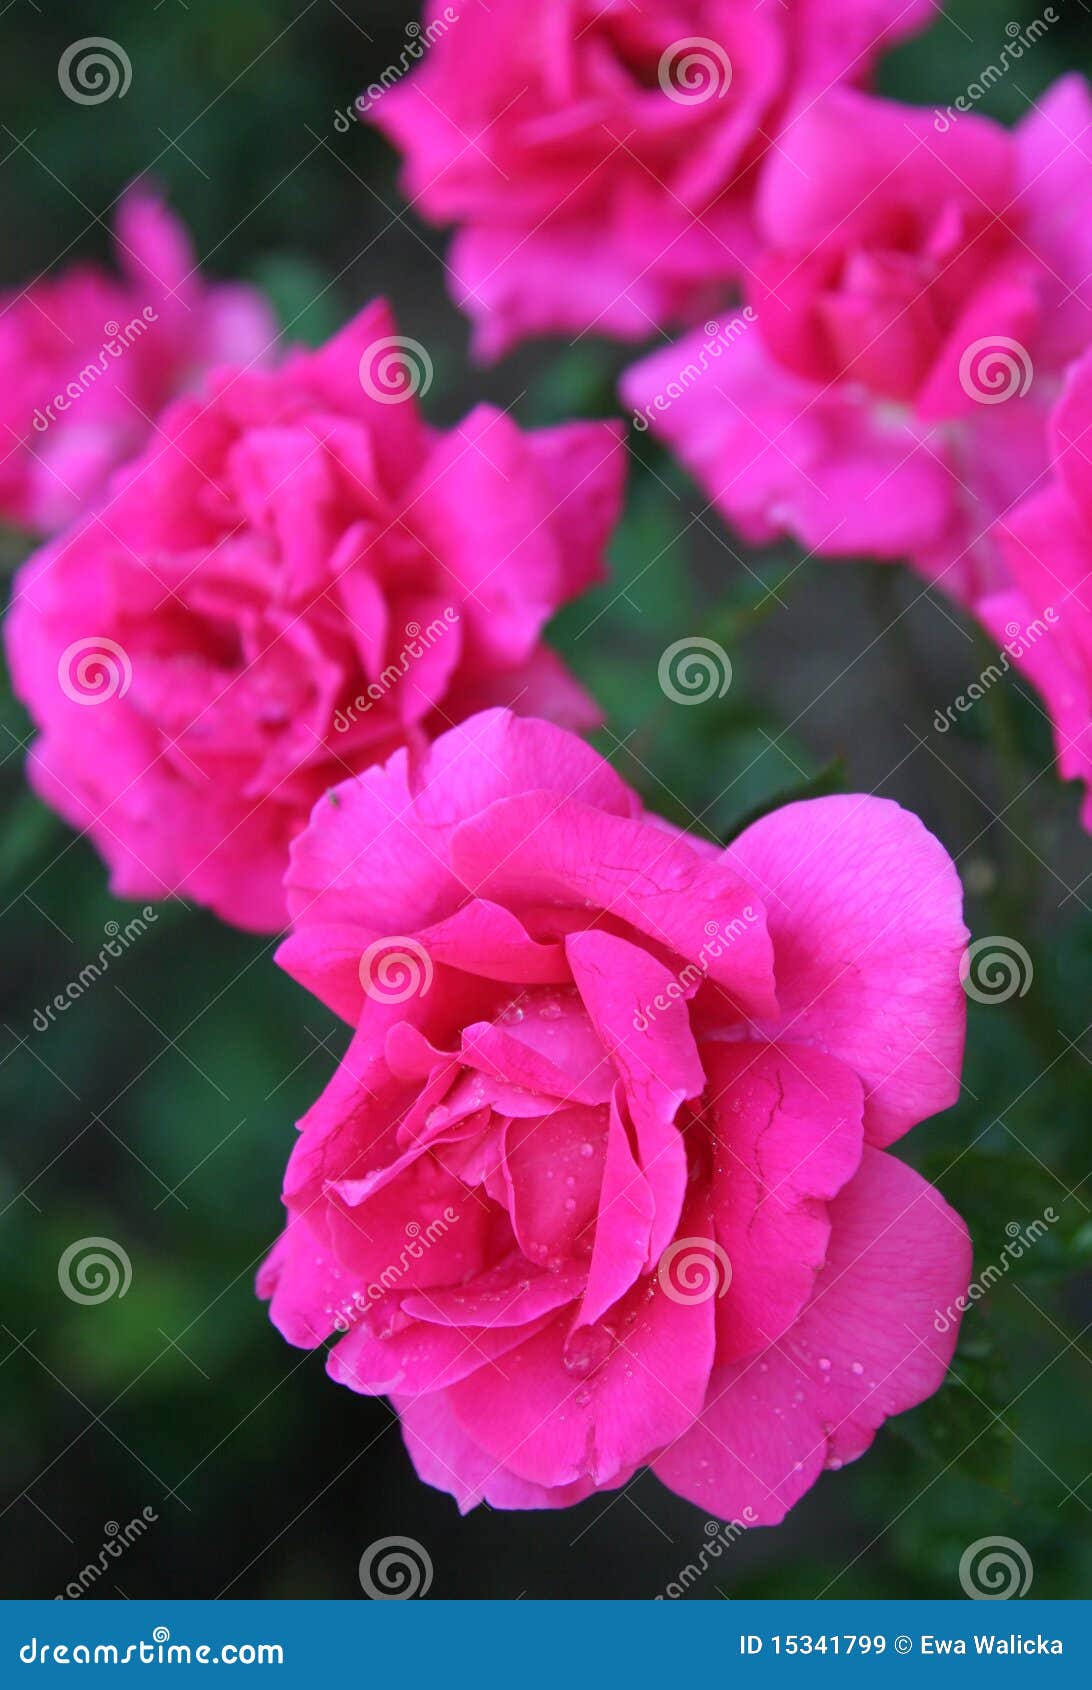 bulgarian rose